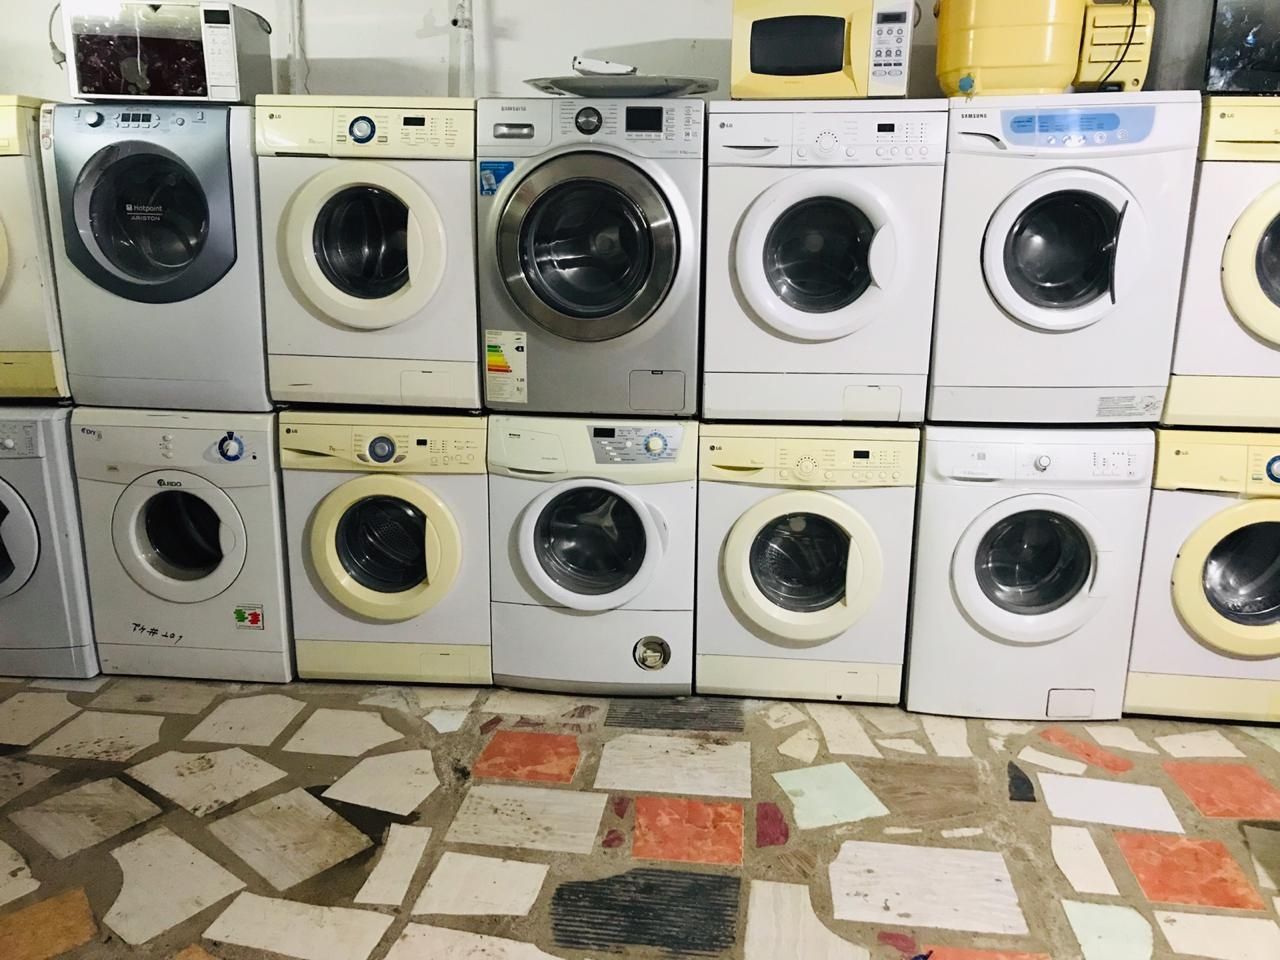 Продам стиральные машинки в рабочем состаение